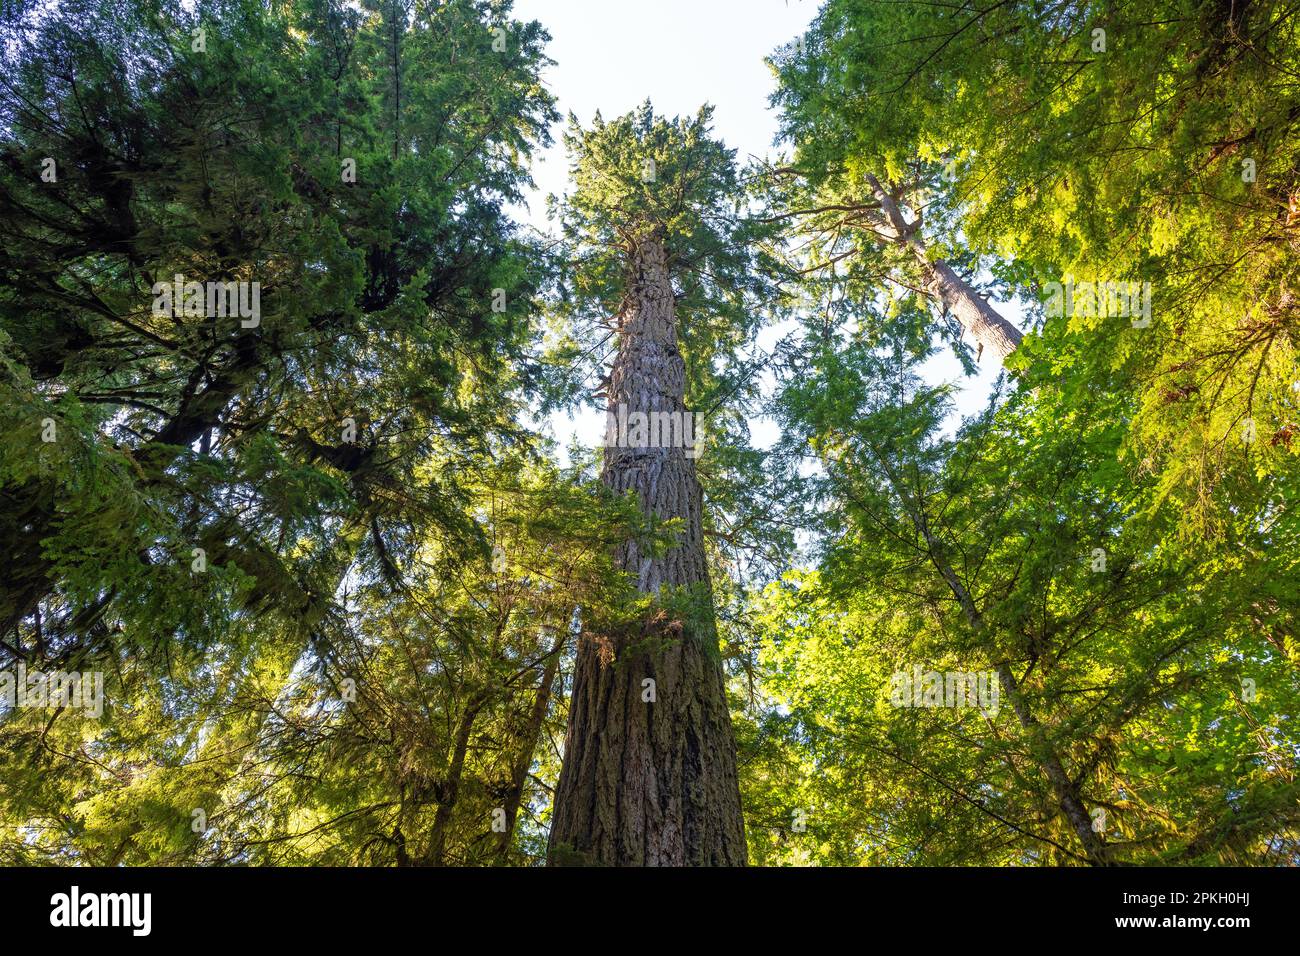 Douglas géant (Pseudotsuga menziesii), le plus haut arbre du parc provincial Macmillan, Cathedral Grove, île de Vancouver, Colombie-Britannique, Canada. Banque D'Images